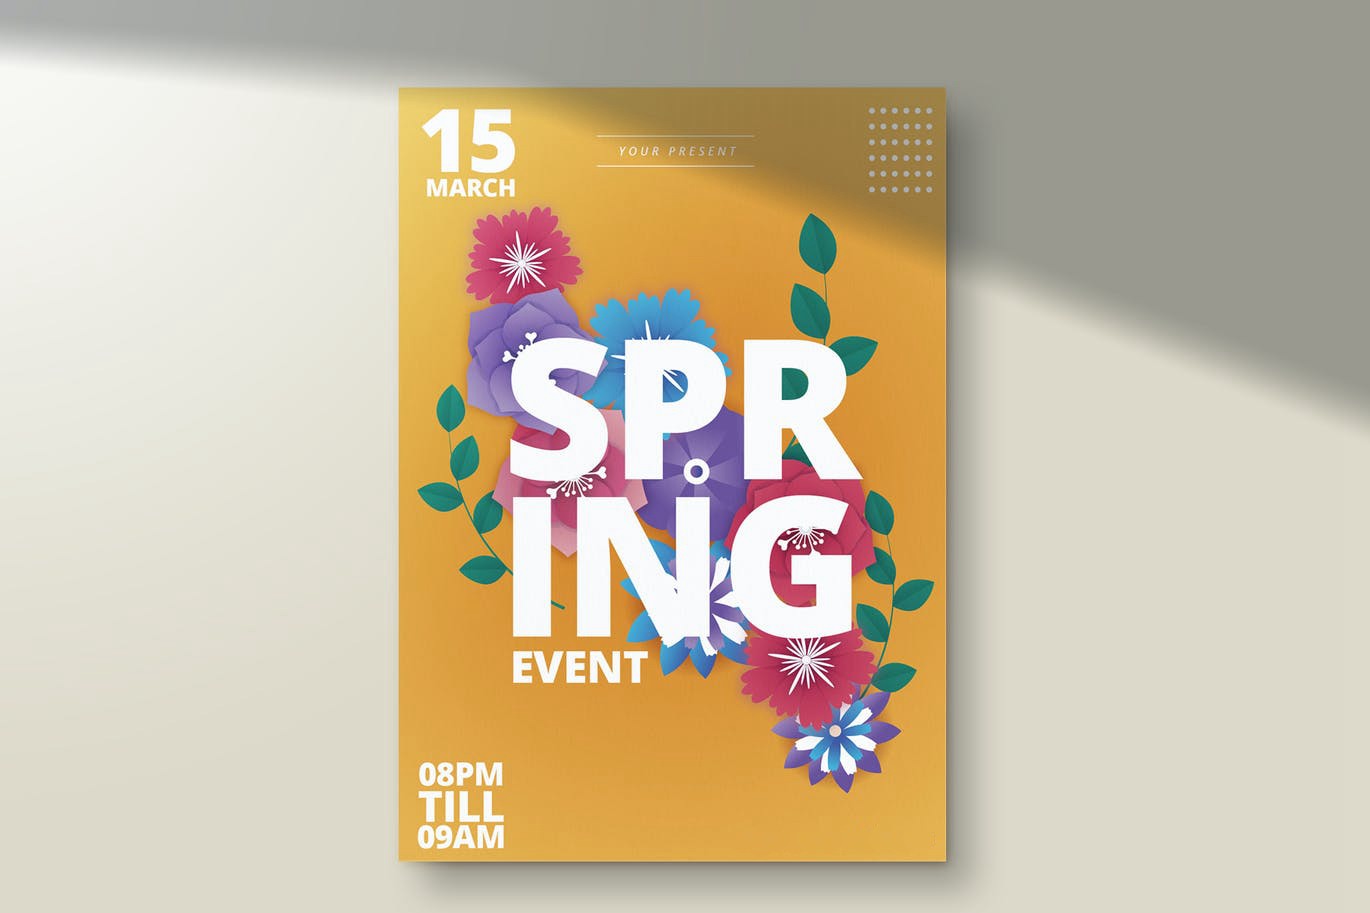 春季活动传单海报模板下载 Spring Event Flyer Template Ver. 1 设计素材 第1张